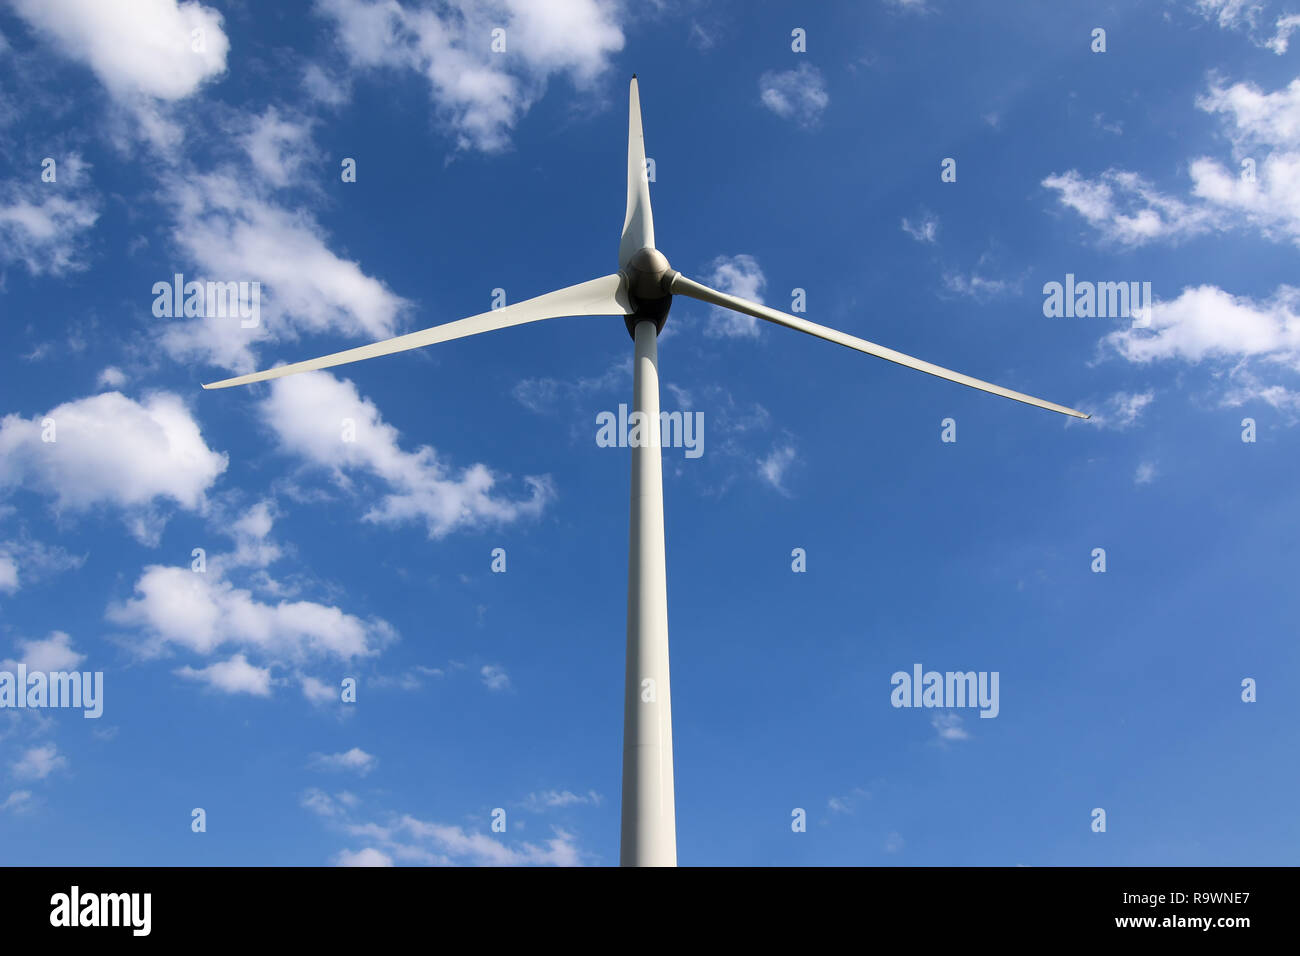 Imagen de la alimentación ecológica, planta de energía eólica - turbina de viento - Energía limpia Foto de stock